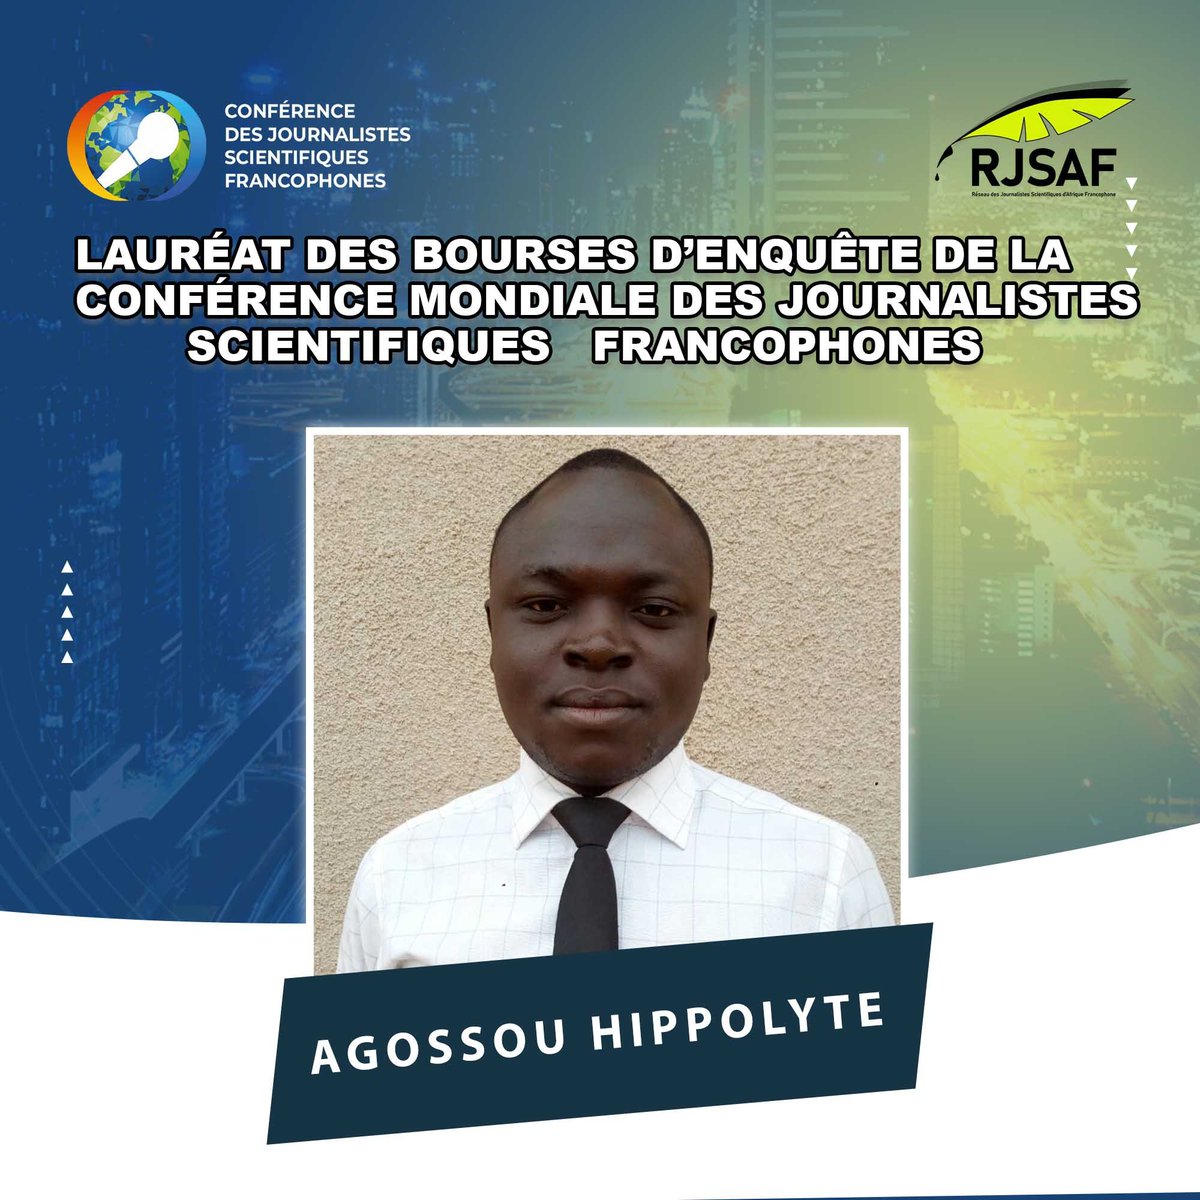 Hippolyte Agossou, titulaire d'un Ph.D. en sciences agronomiques est un journaliste scientifique passionné des histoires environnementales et déterminé à faire entendre la voix de la nature et de la science. Il a, à son actif, plusieurs distinctions. C'est l'un de nos lauréats !